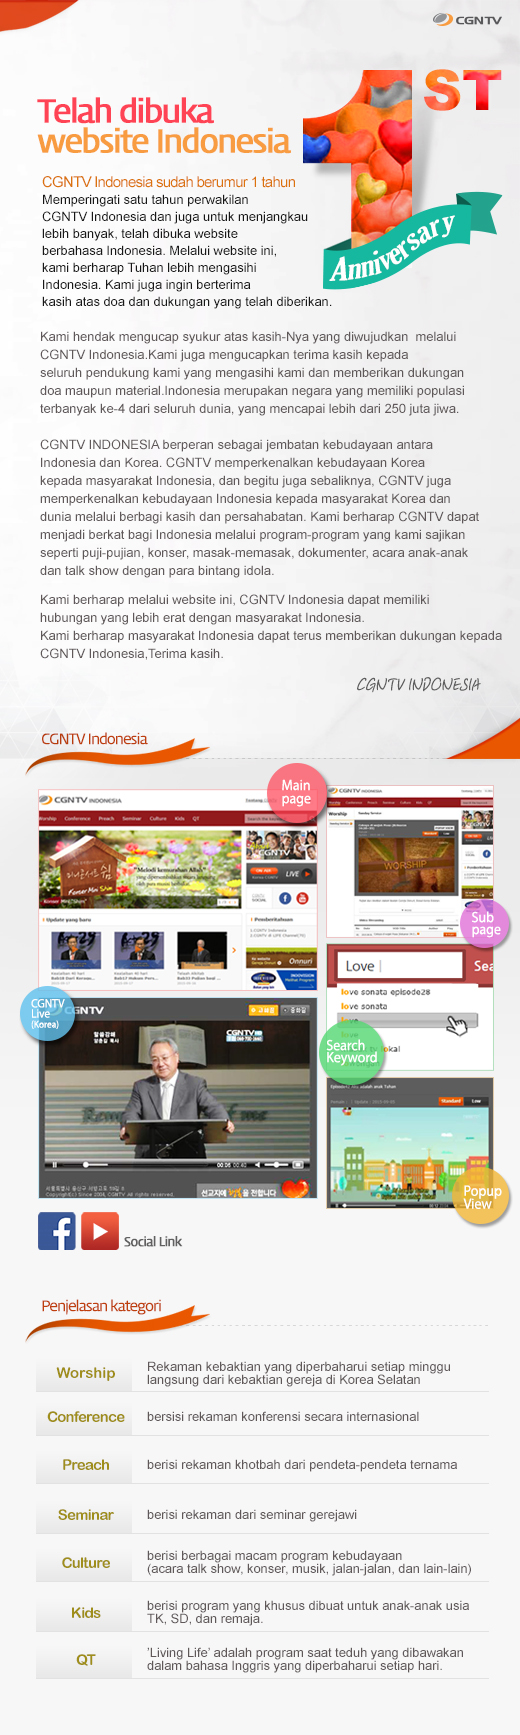 CGNTV Indonesia sudah berumur 1 tahun!  Telah dibuka website Indonesia